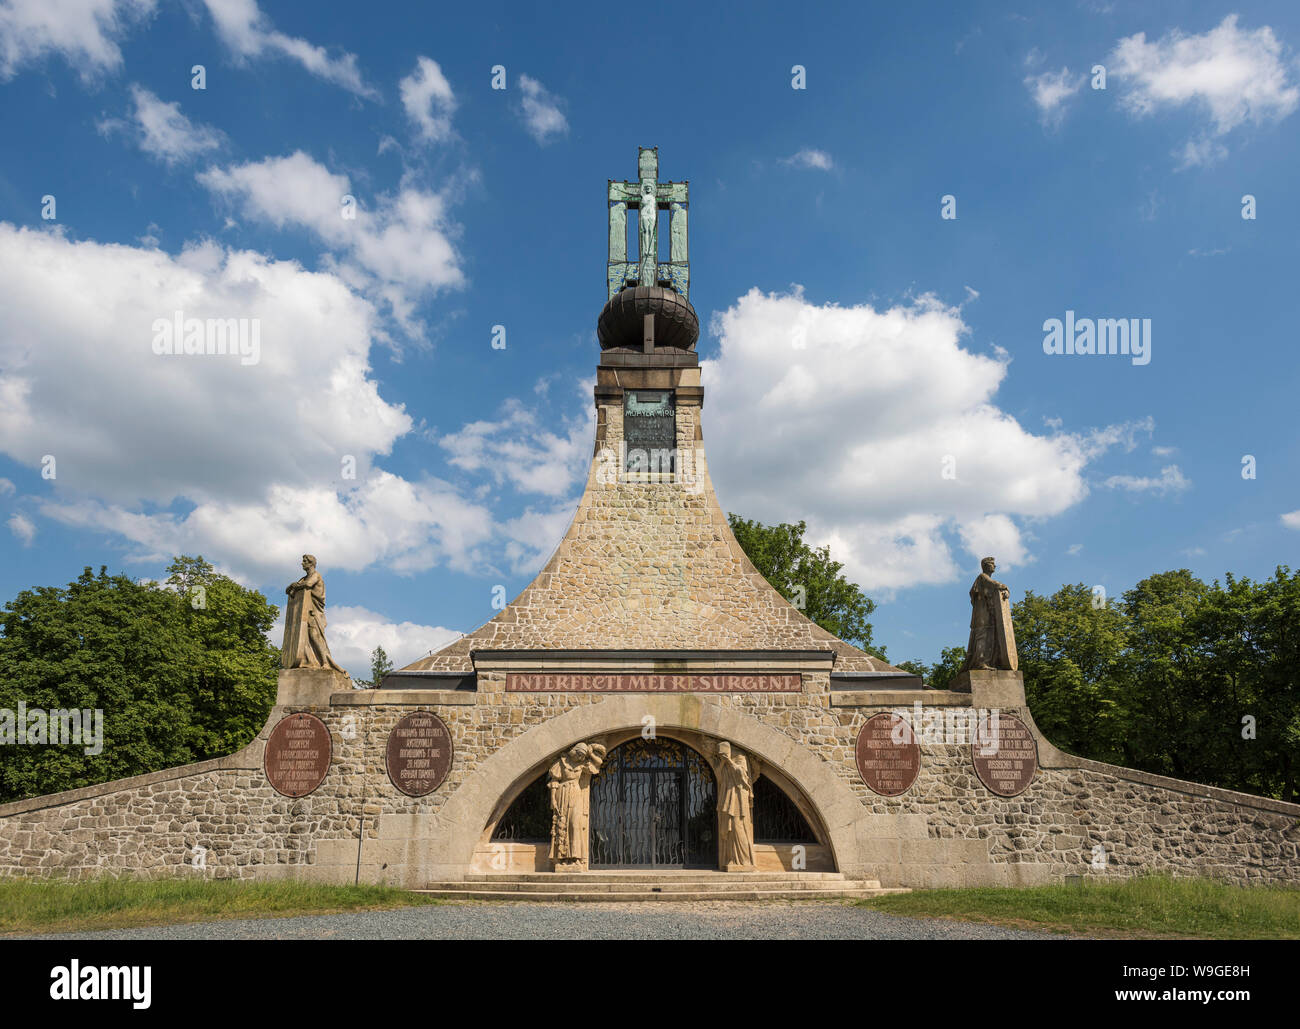 Mémorial de la paix de cairn sur le site de la bataille d'Austerlitz, République Tchèque, Europe Banque D'Images